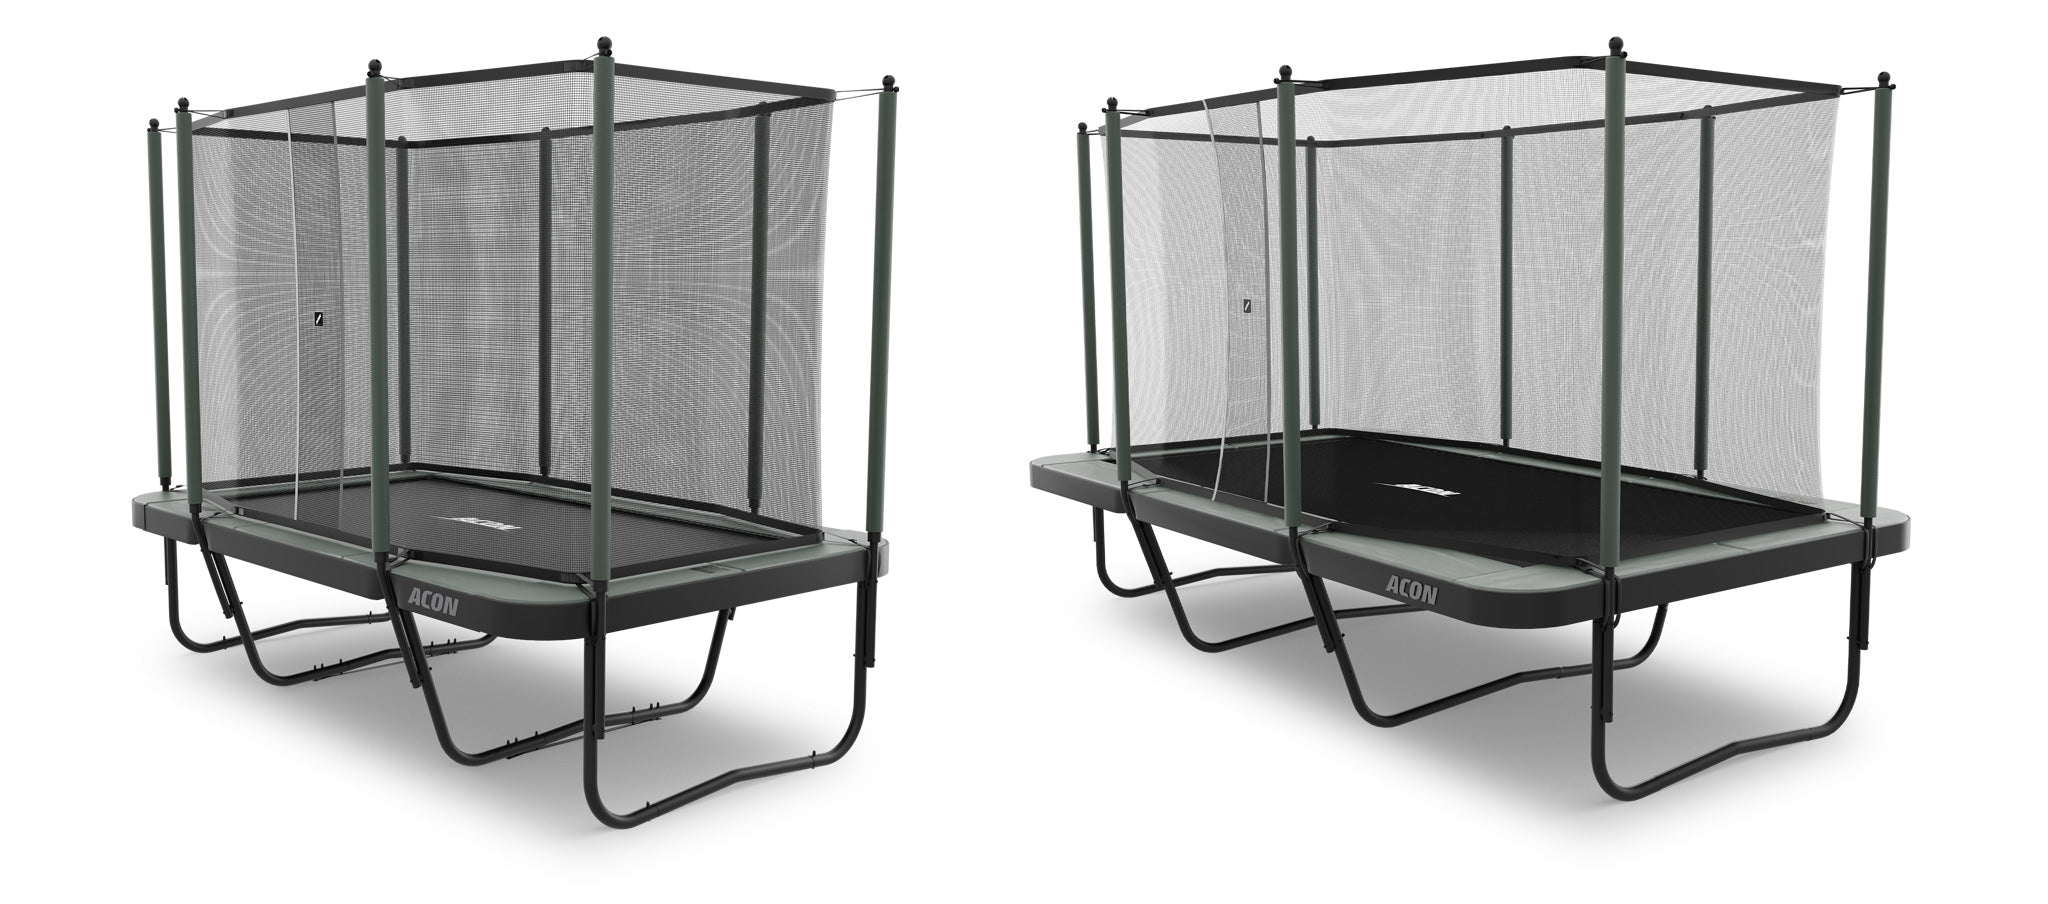 ACON suorakulmaiset trampoliinit turvaverkolla ja Performance-paketilla varustettuna. Vasemmalla on pienempi 13 HD trampoliini ja oikealla on suurempi 16 HD trampoliini